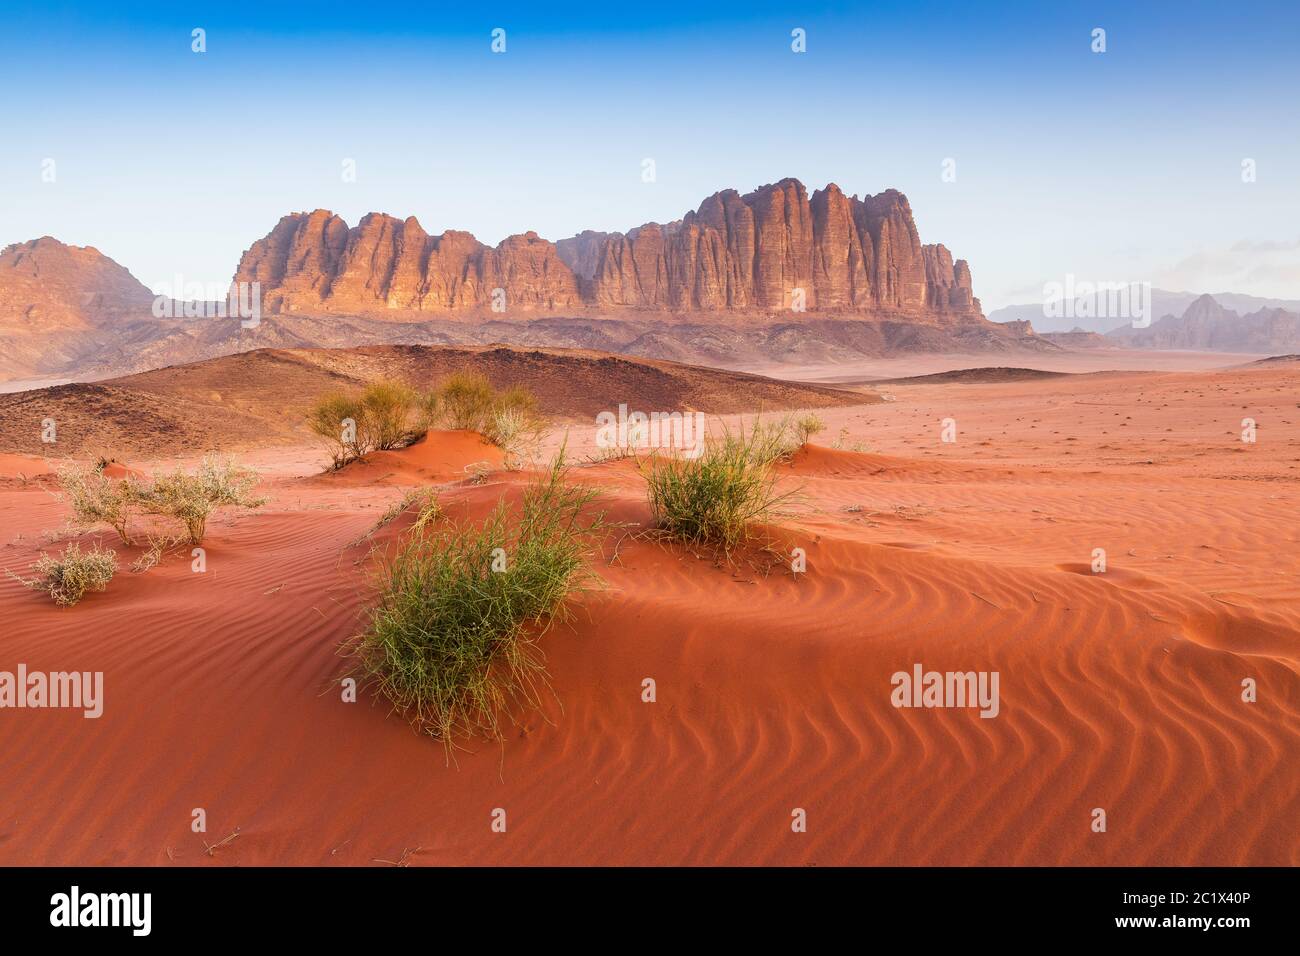 Deserto di Wadi Rum, Giordania. Il deserto rosso e la montagna Jabal al Qattar. Foto Stock